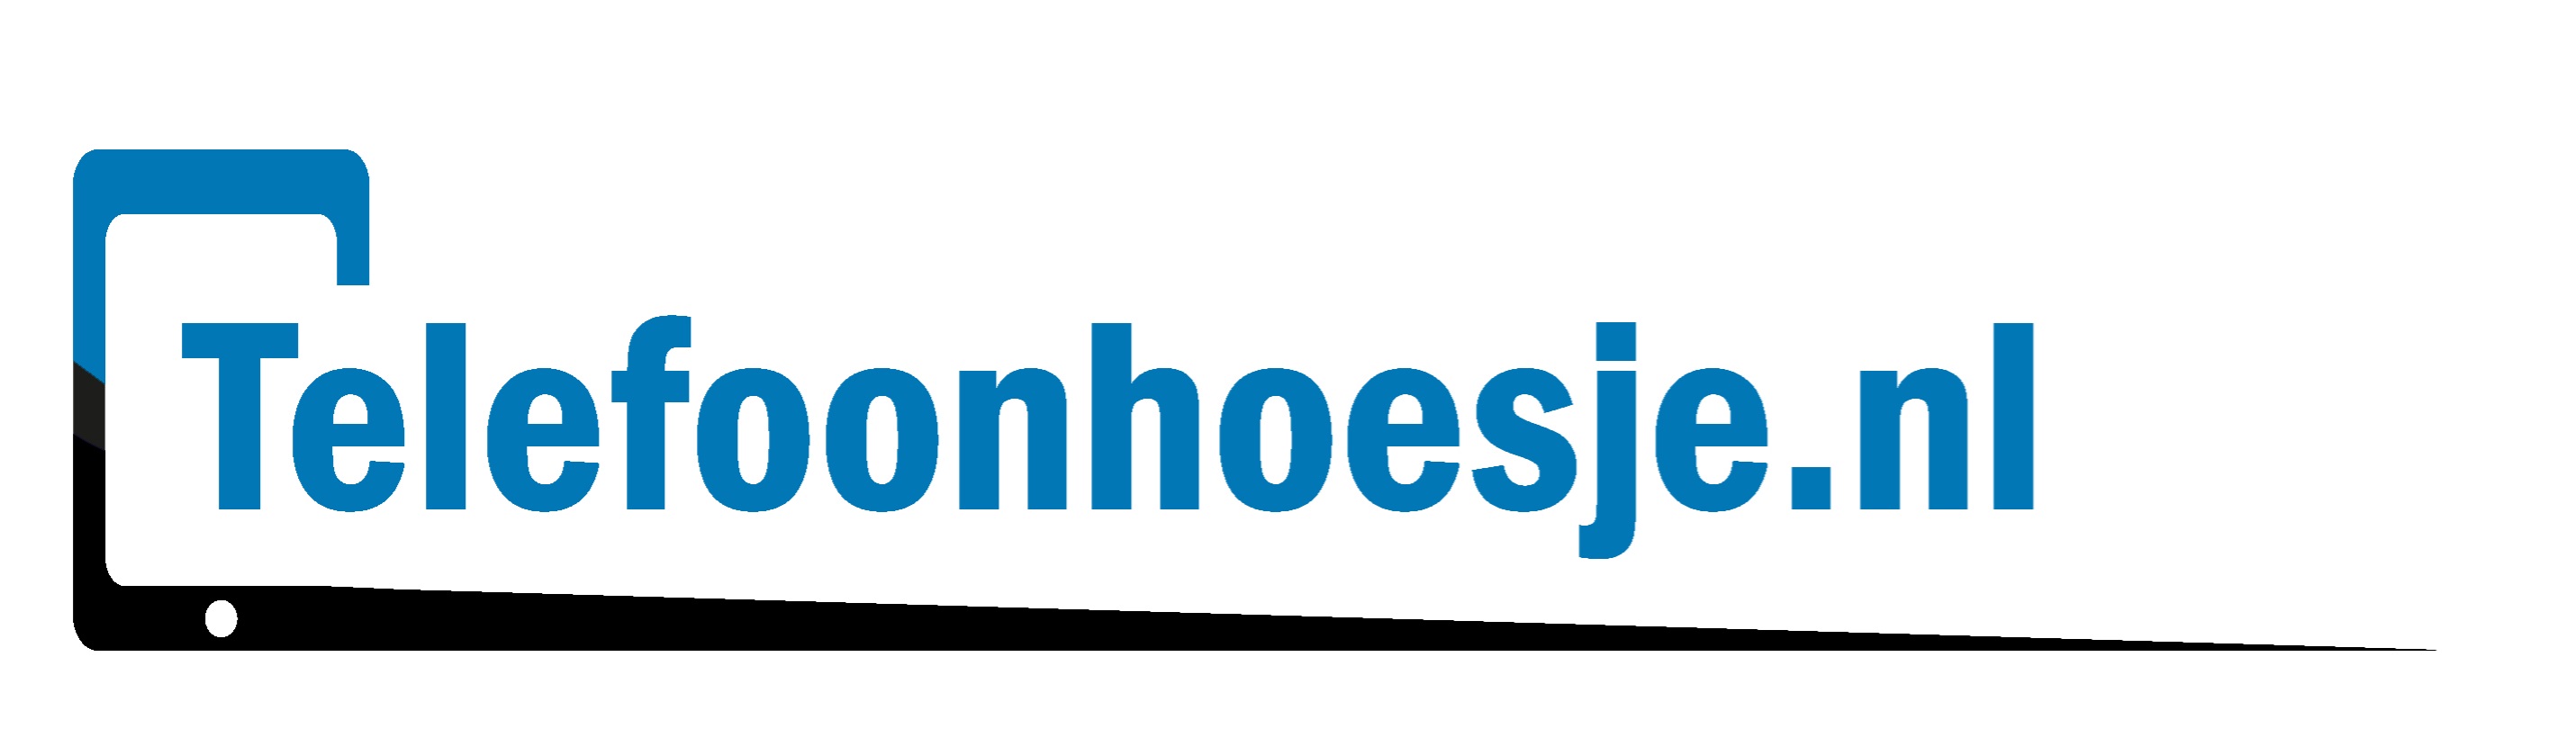 logo Telefoonhoesje.nl